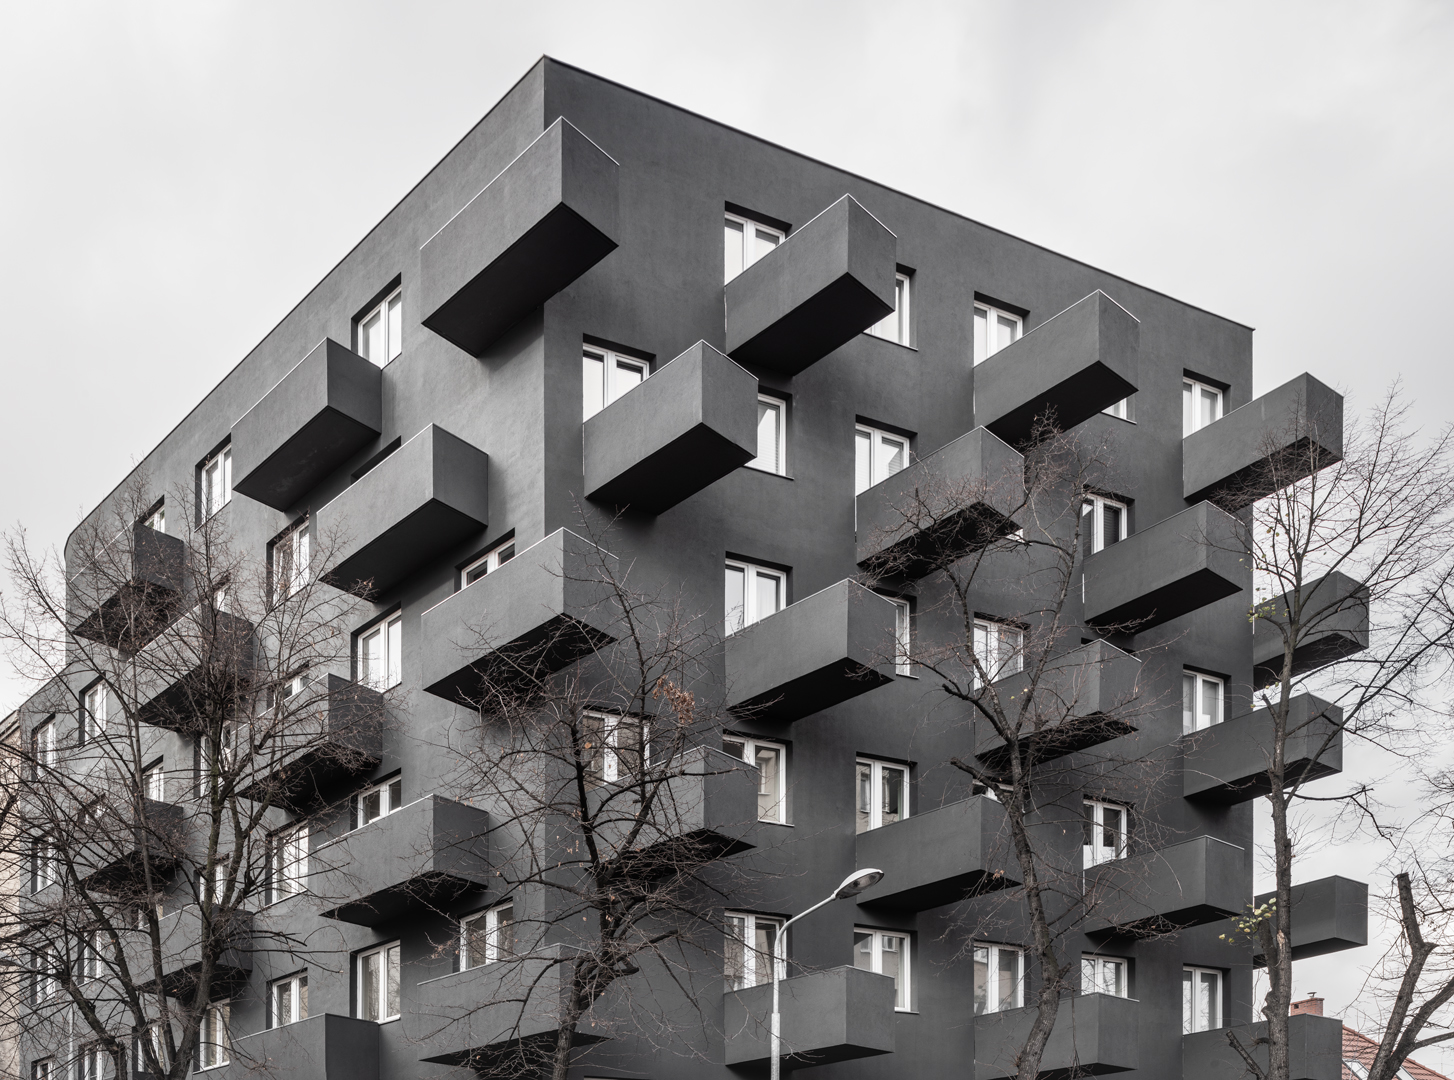 Unikato – wielorodzinny budynek zaprojektowany przez Roberta Koniecznego